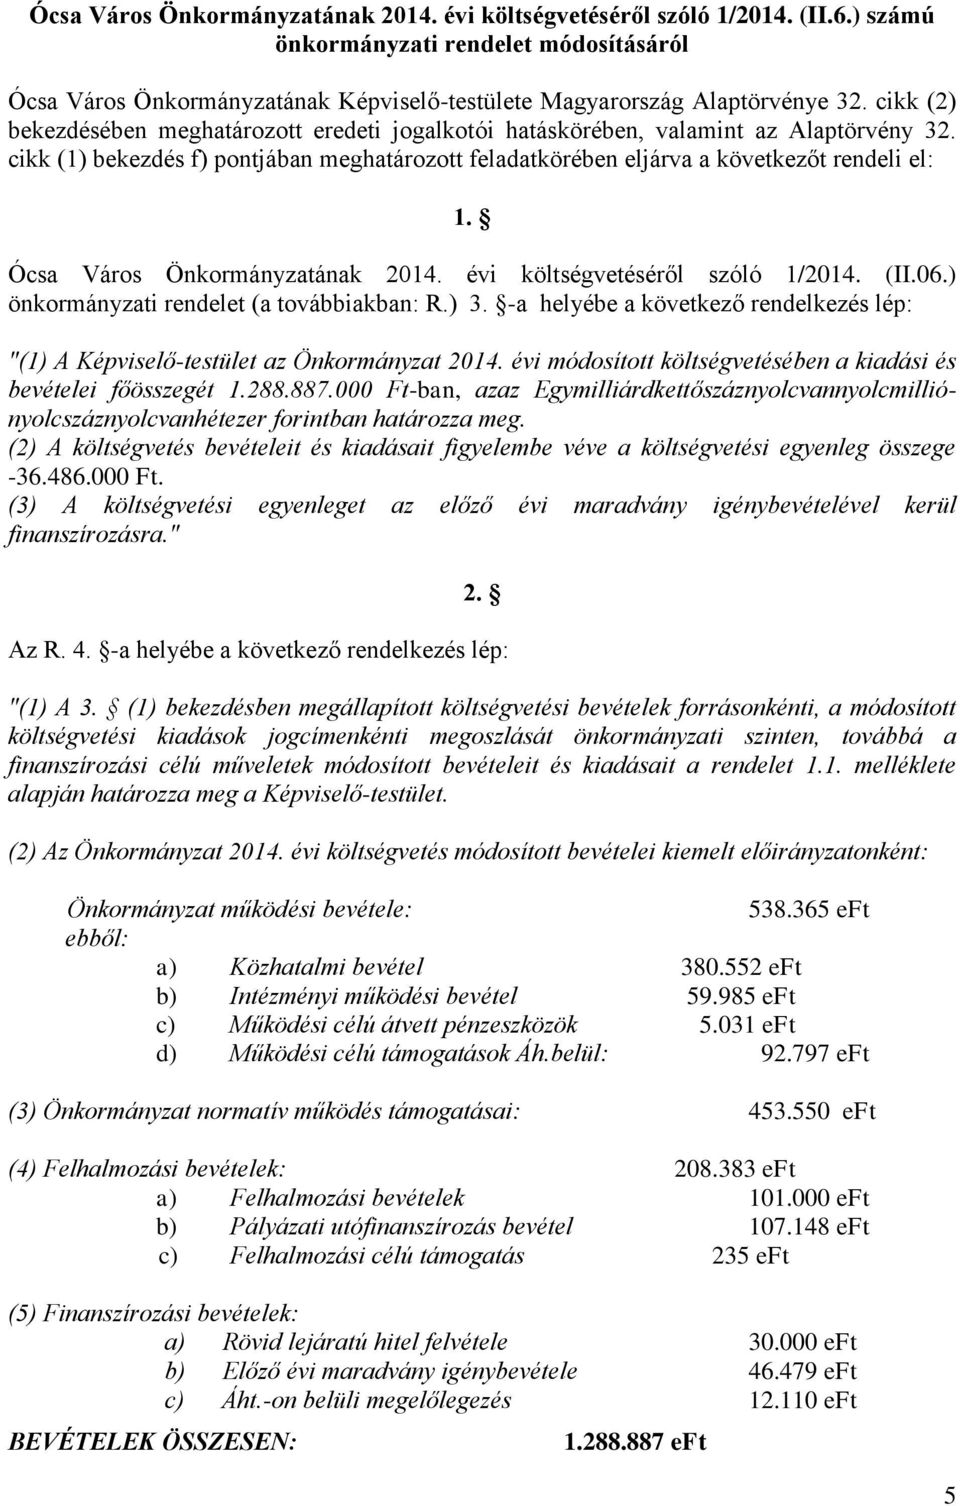 Ócsa Város Önkormányzatának 2014. évi költségvetéséről szóló 1/2014. (II.06.) önkormányzati rendelet (a továbbiakban: R.) 3.